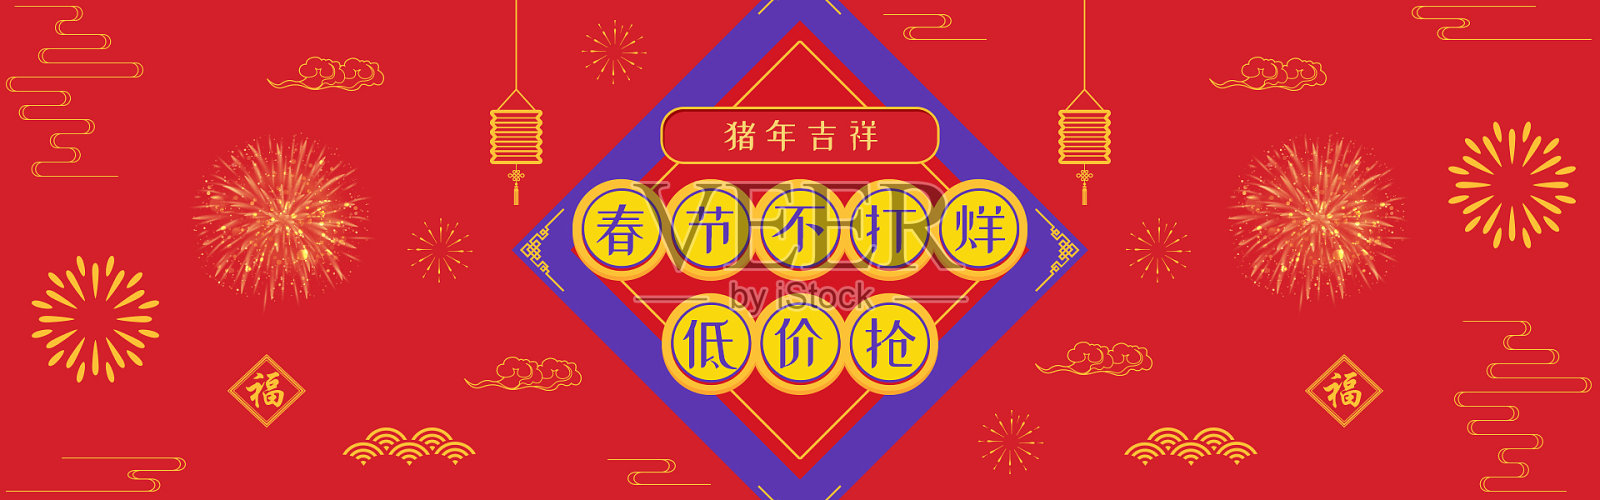 中国风春节海报设计模板素材